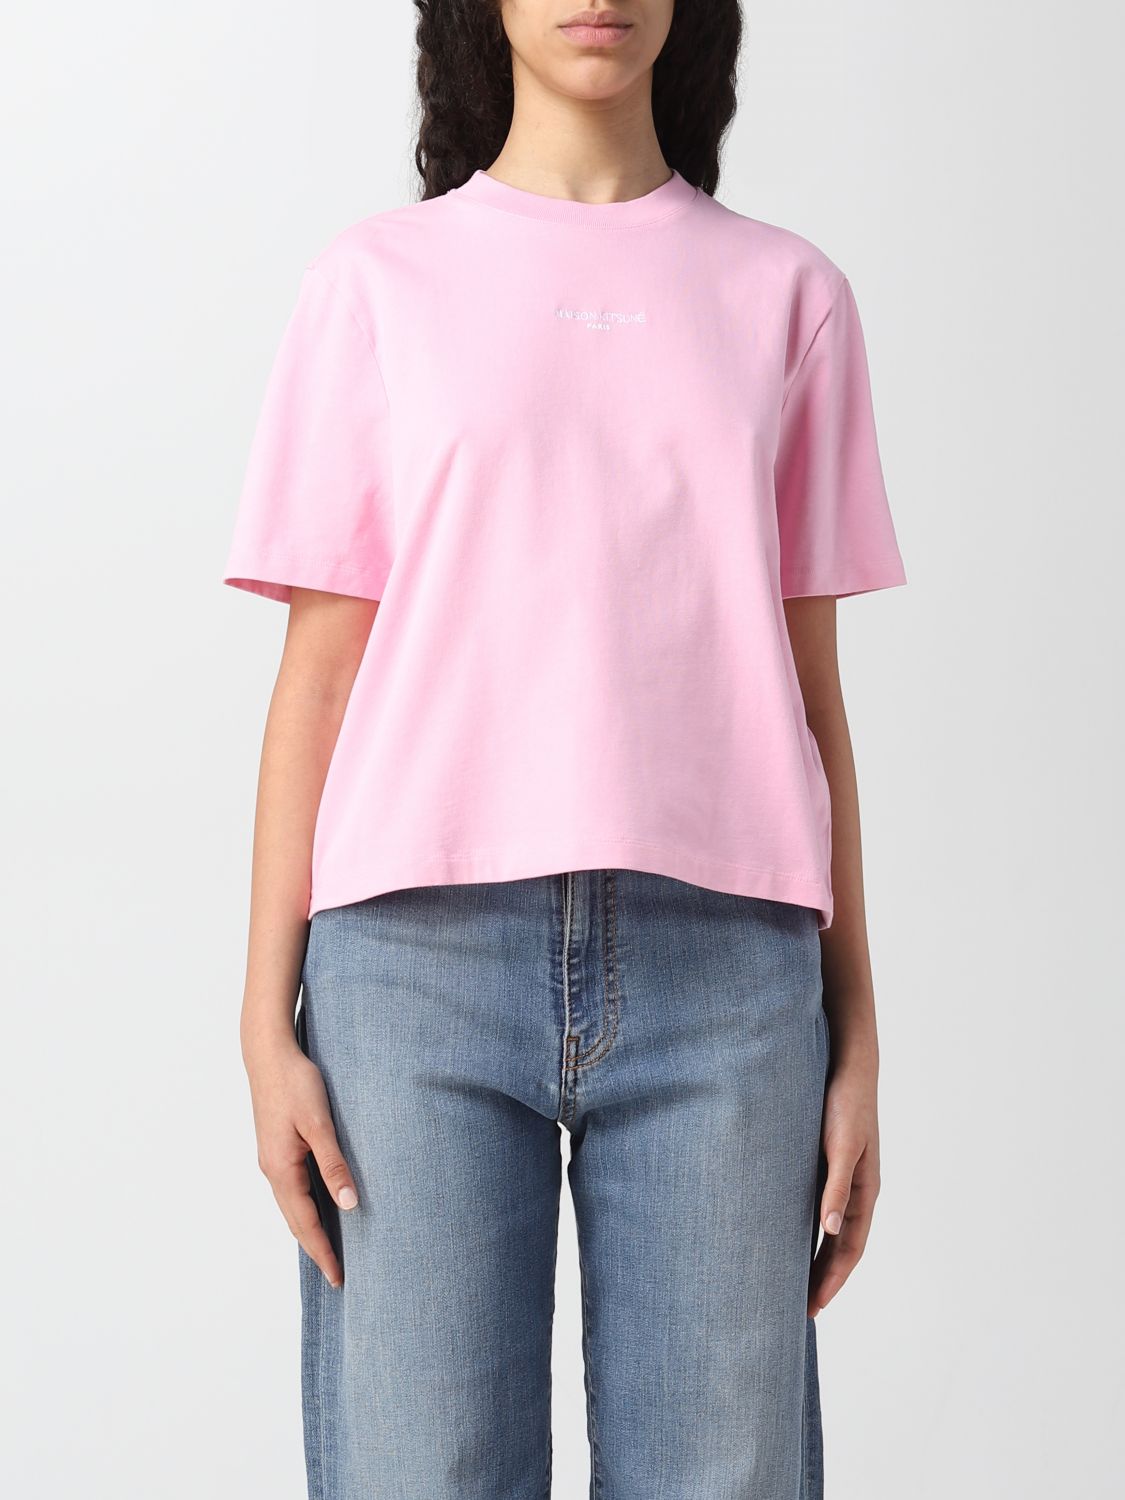 MAISON KITSUNÉ: t-shirt for woman - Pink | Maison Kitsuné t-shirt ...